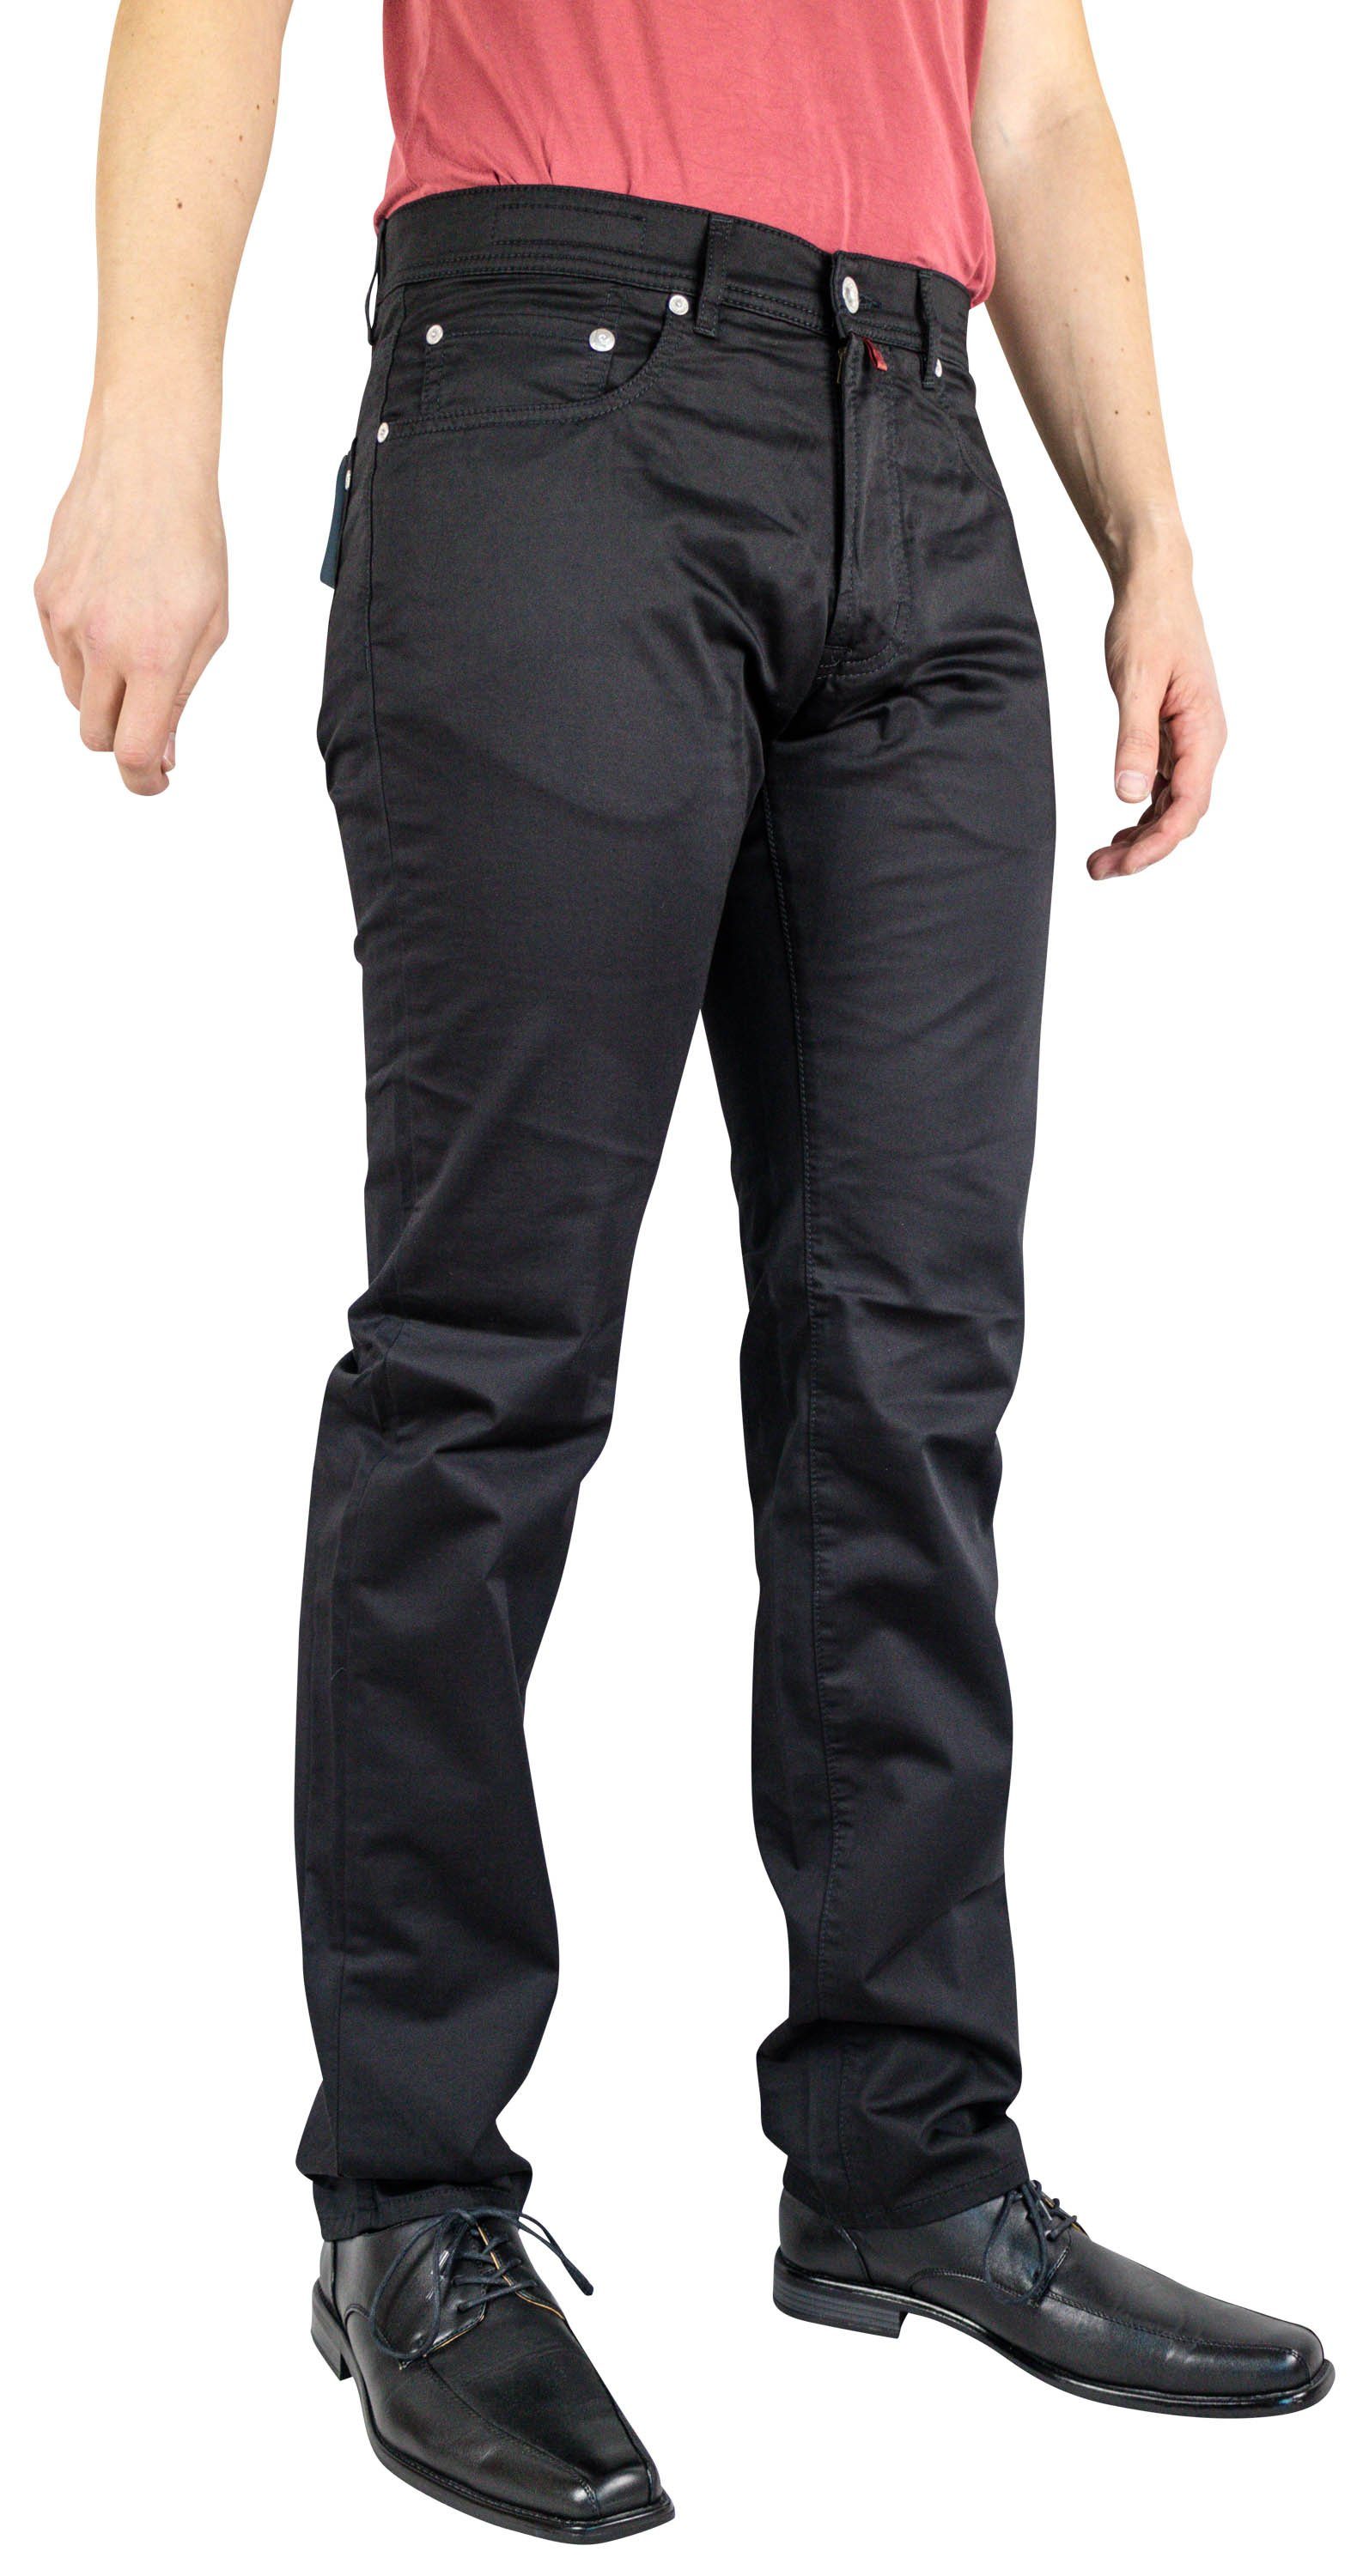 Pierre Cardin 5-Pocket-Jeans PIERRE CARDIN LYON Schwarz black clean 3091 2280.88